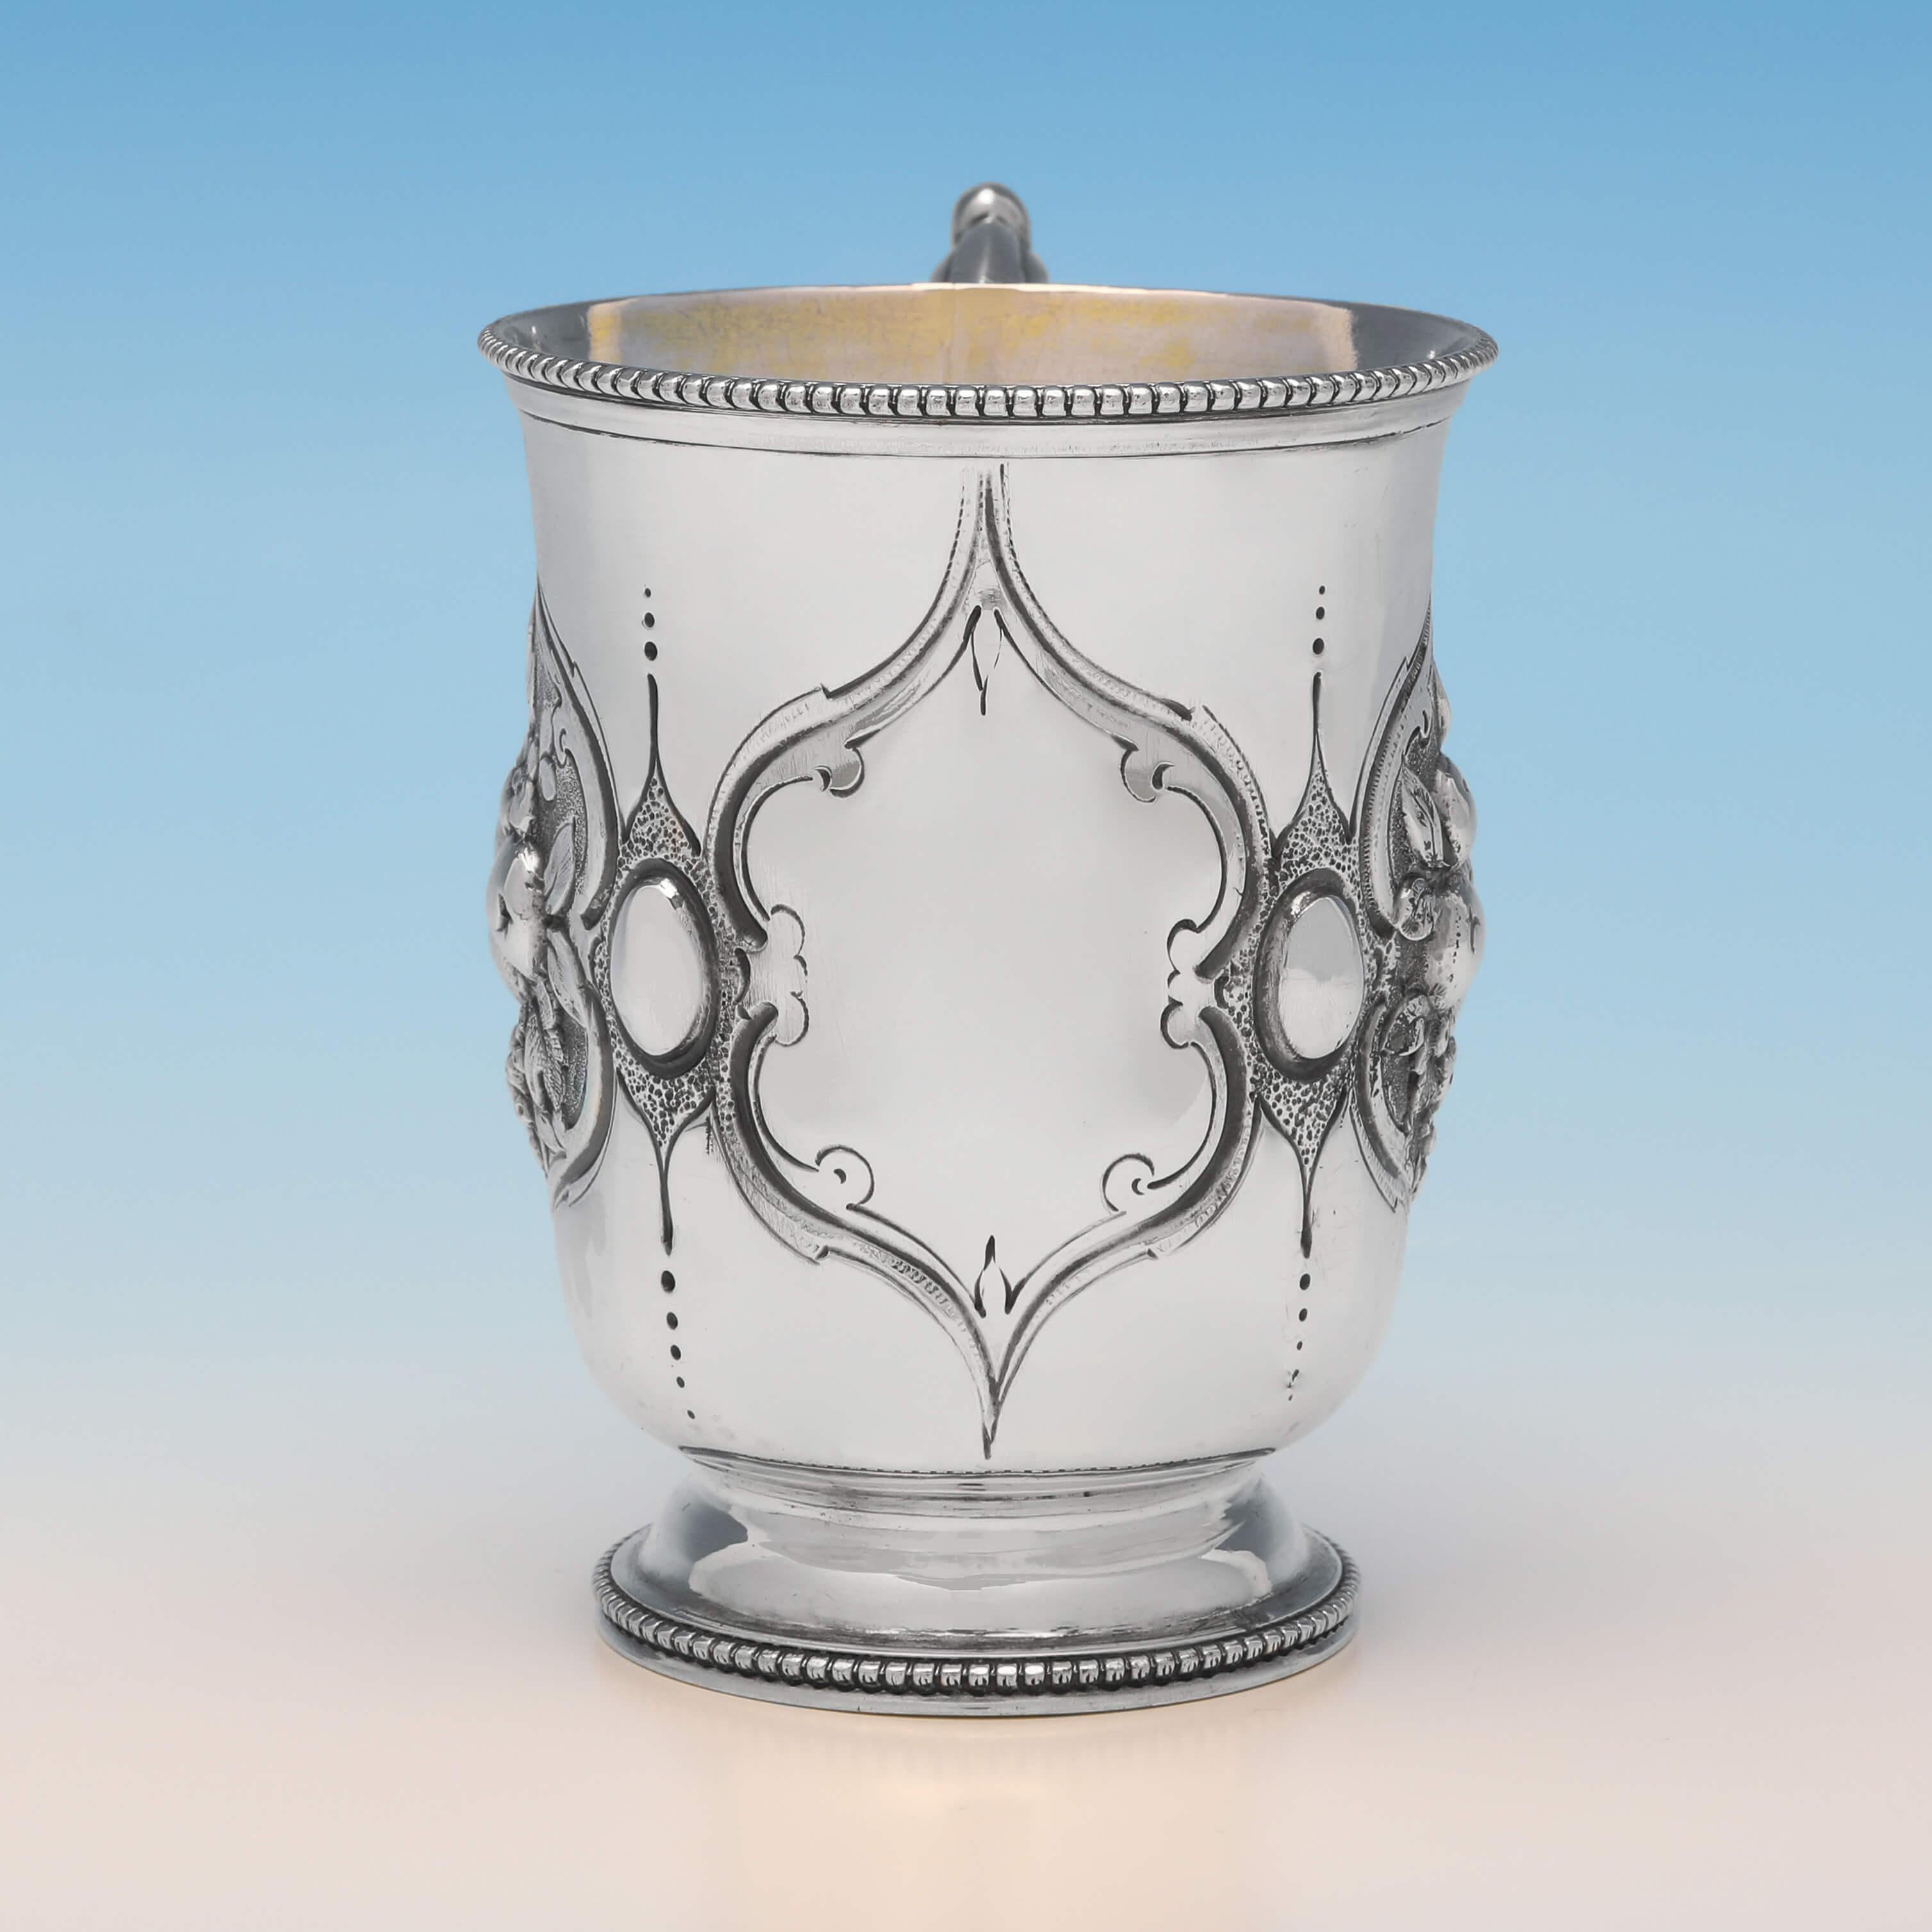 Poinçonnée à Londres en 1866 par Henry Holland, cette très jolie tasse de baptême en argent sterling de l'époque victorienne présente une décoration ciselée et gravée sur les côtés, un intérieur doré et des bordures en perles. La tasse de baptême